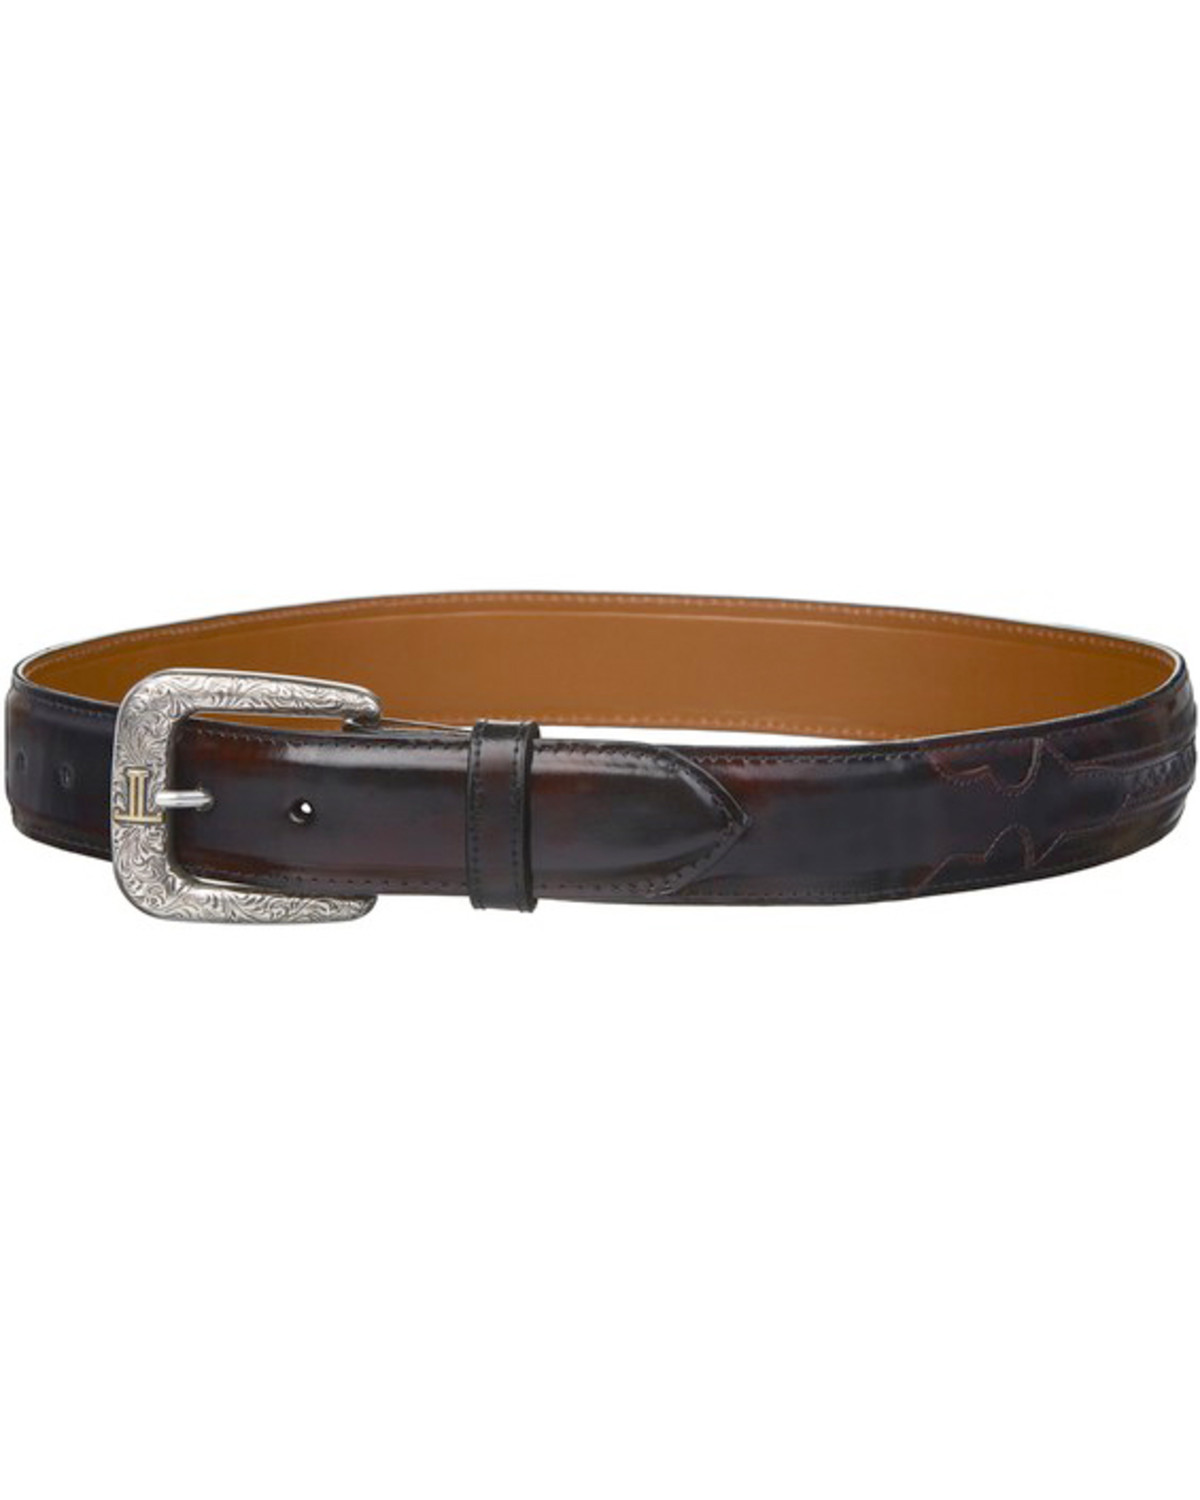 Lucchese Men's Black Cherry Goatskin Leather Belt | Sheplers